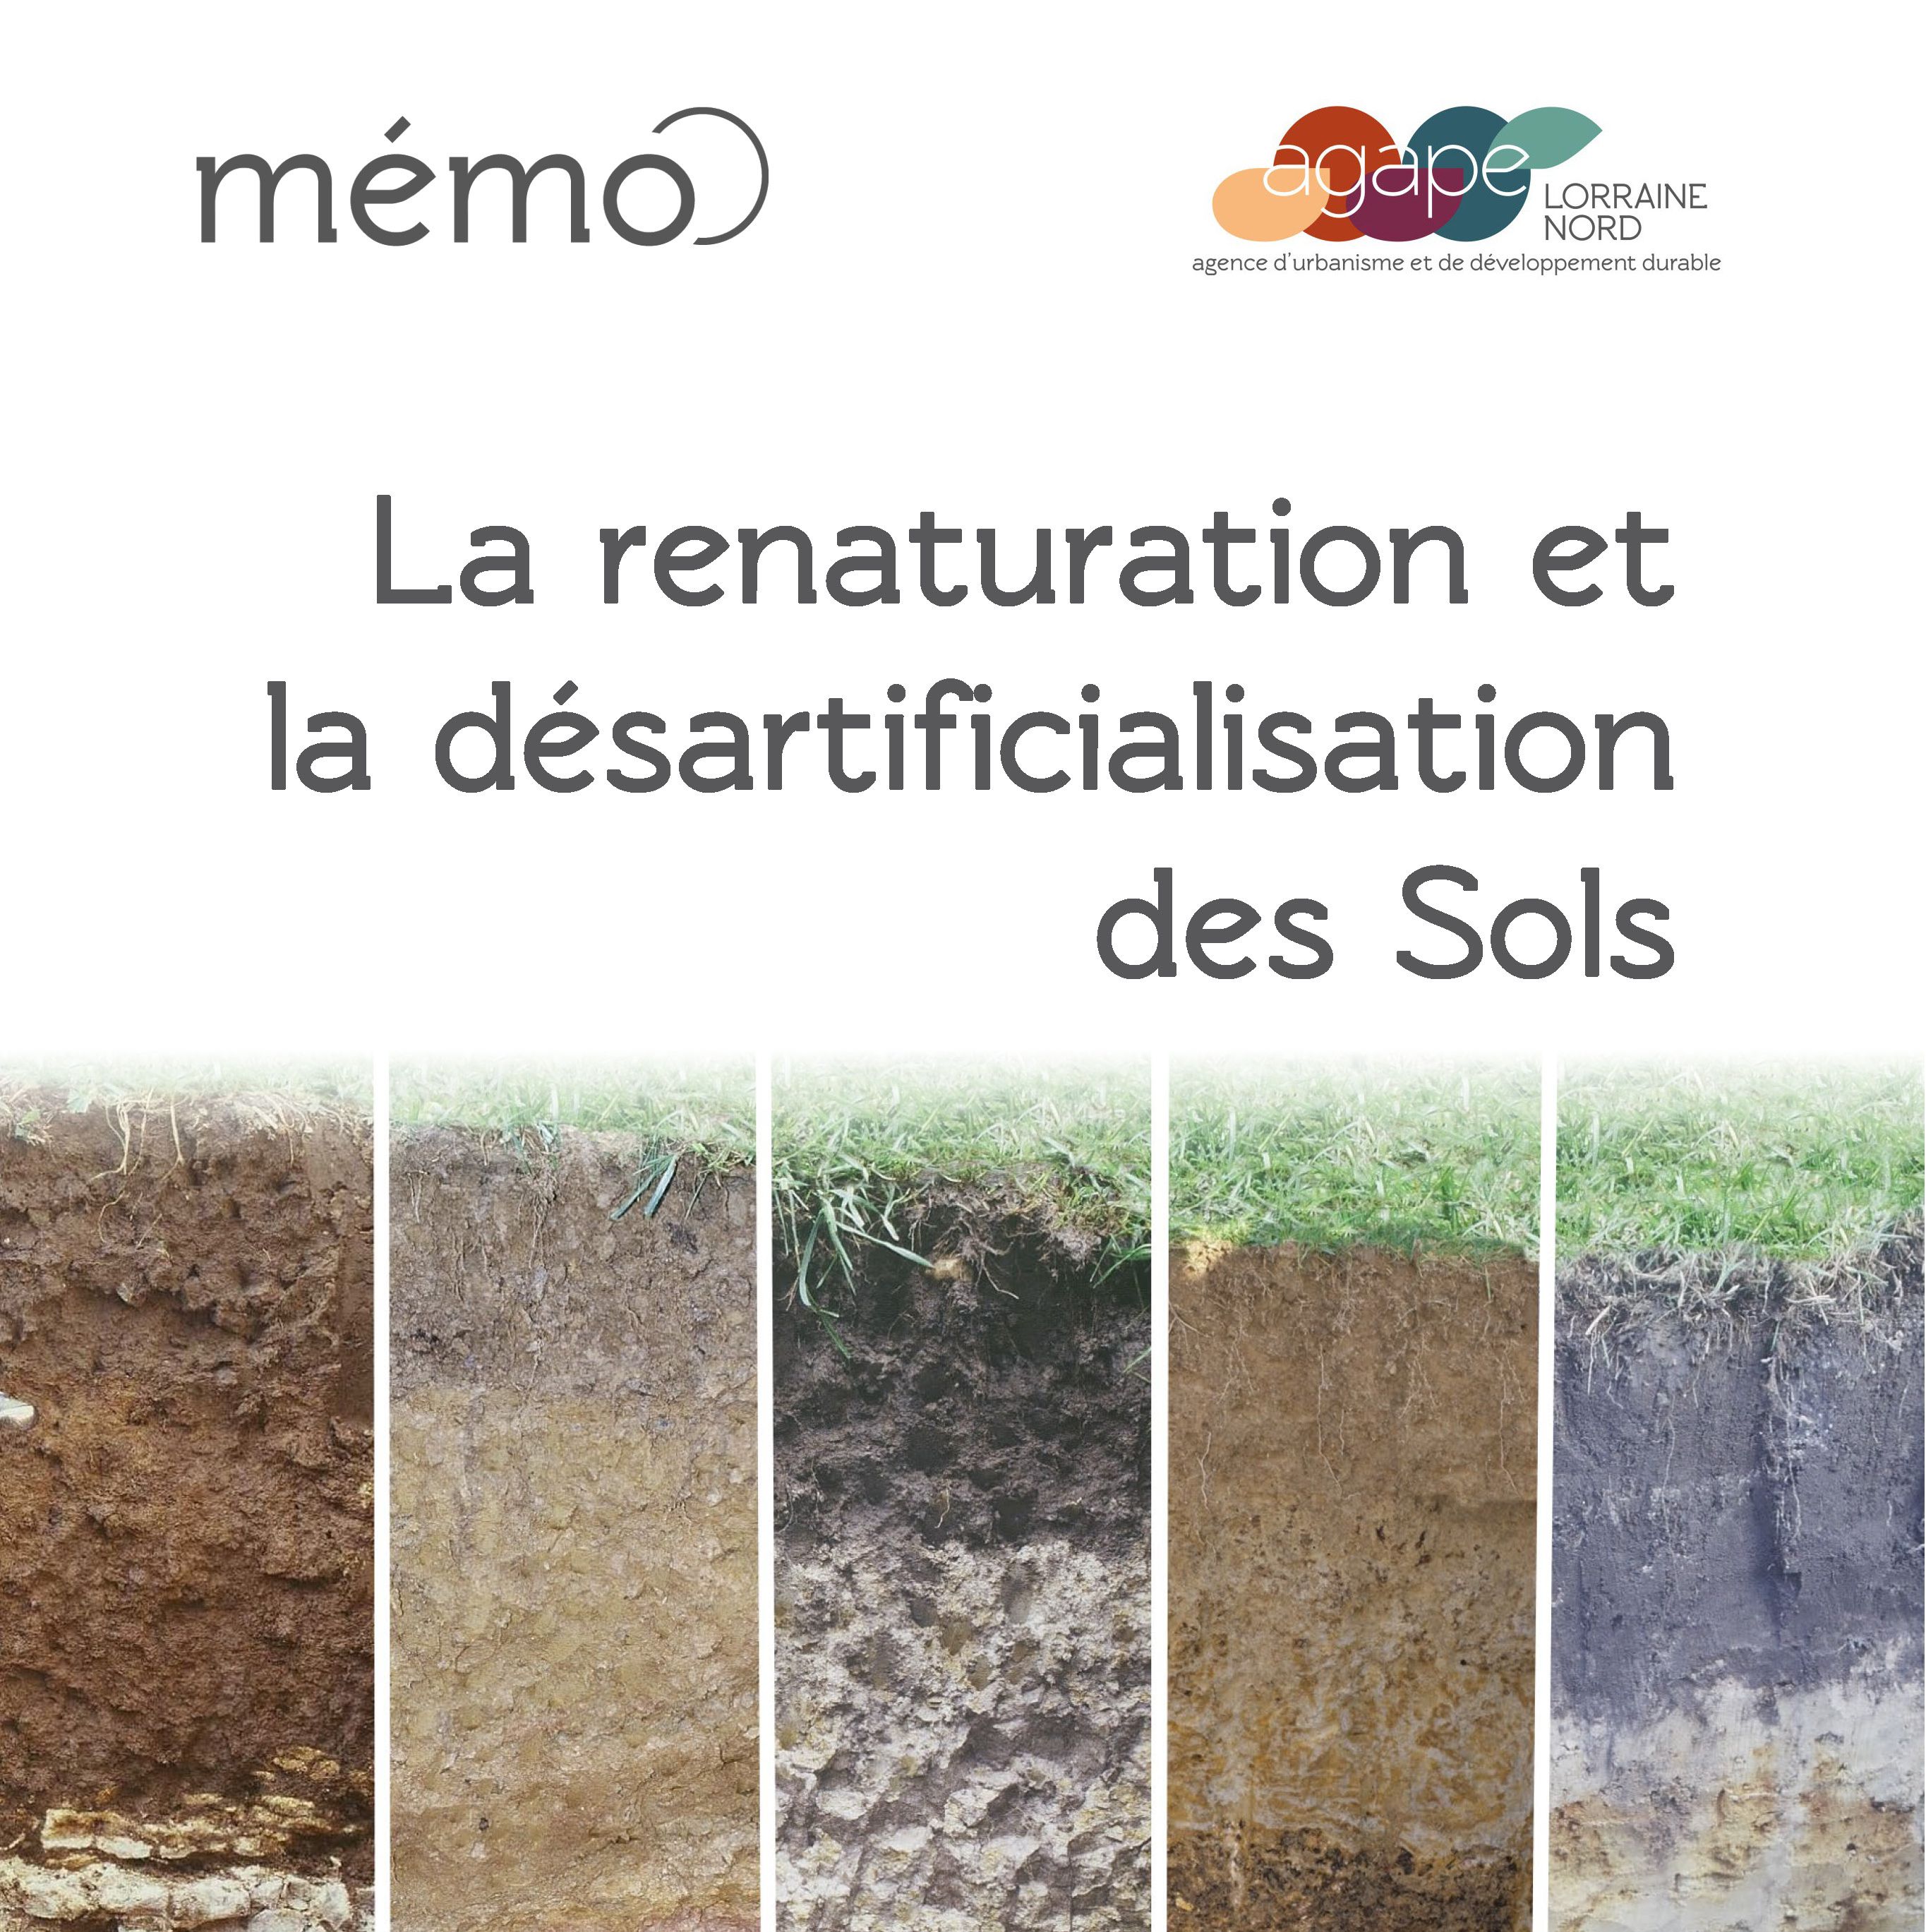 La renaturation et la désartificialisation des sols. Une stratégie à adopter pour les territoires dans la perspective du ZAN